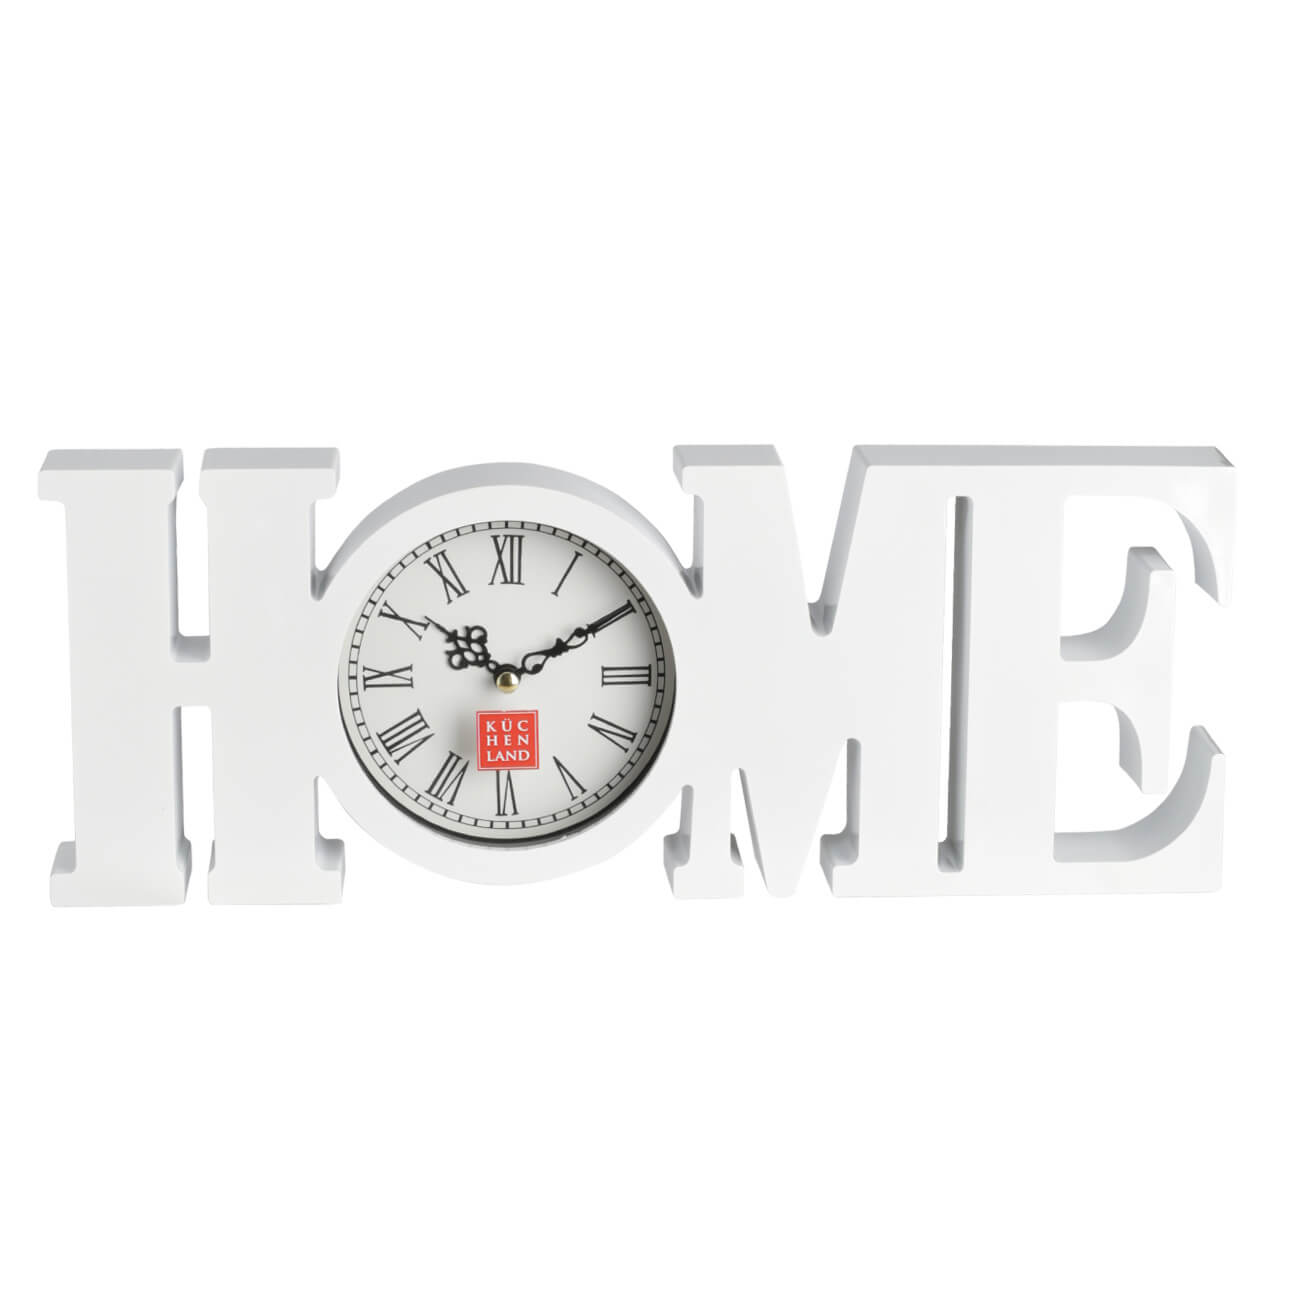 Часы настенные, 39х15 см, пластик/стекло, белые, Ноmе, Home deco изображение № 1